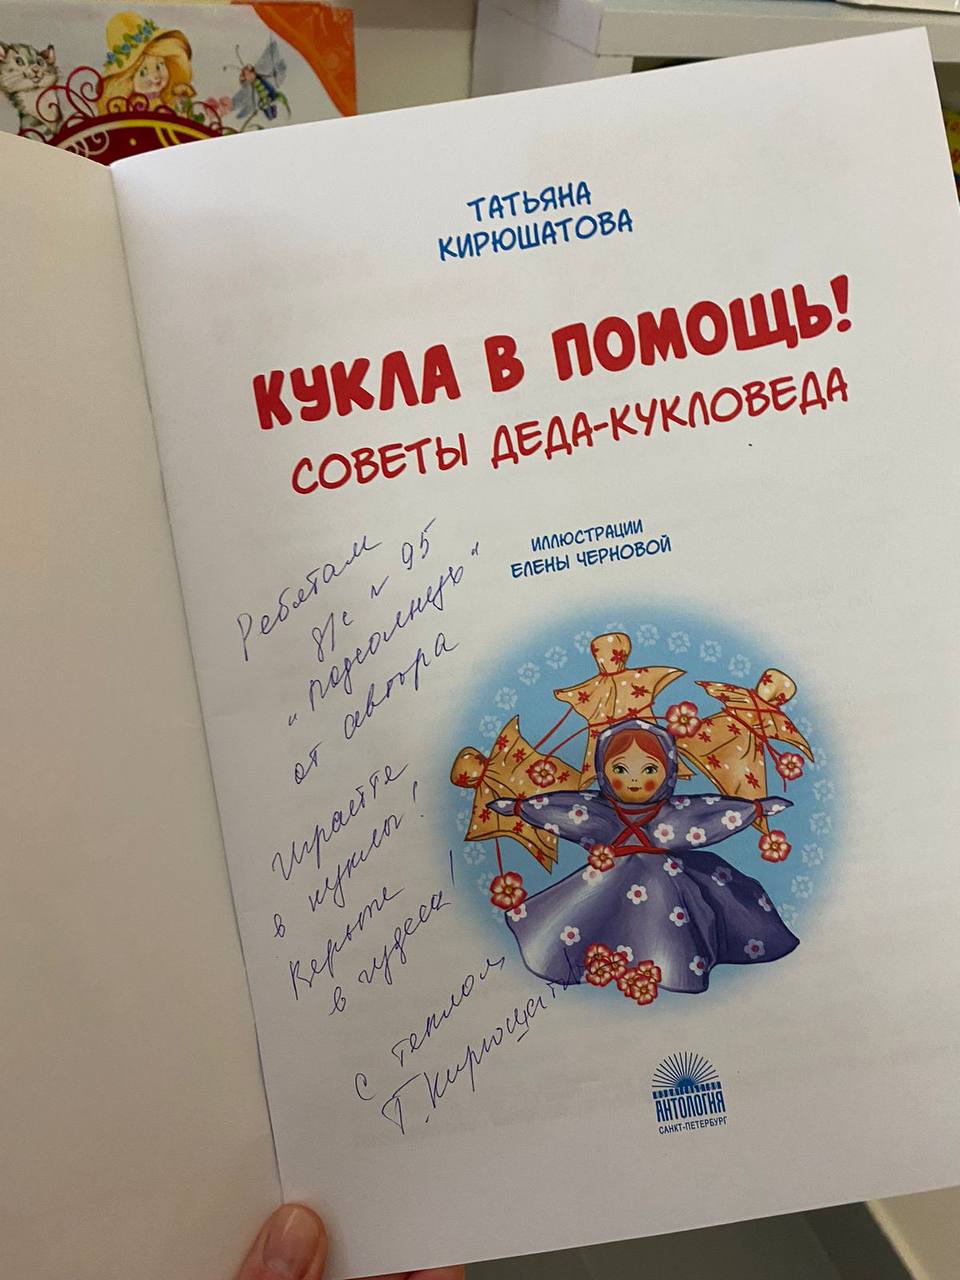 встреча с петербургским детским писателем Татьяной Николаевной Кирюшатовой.